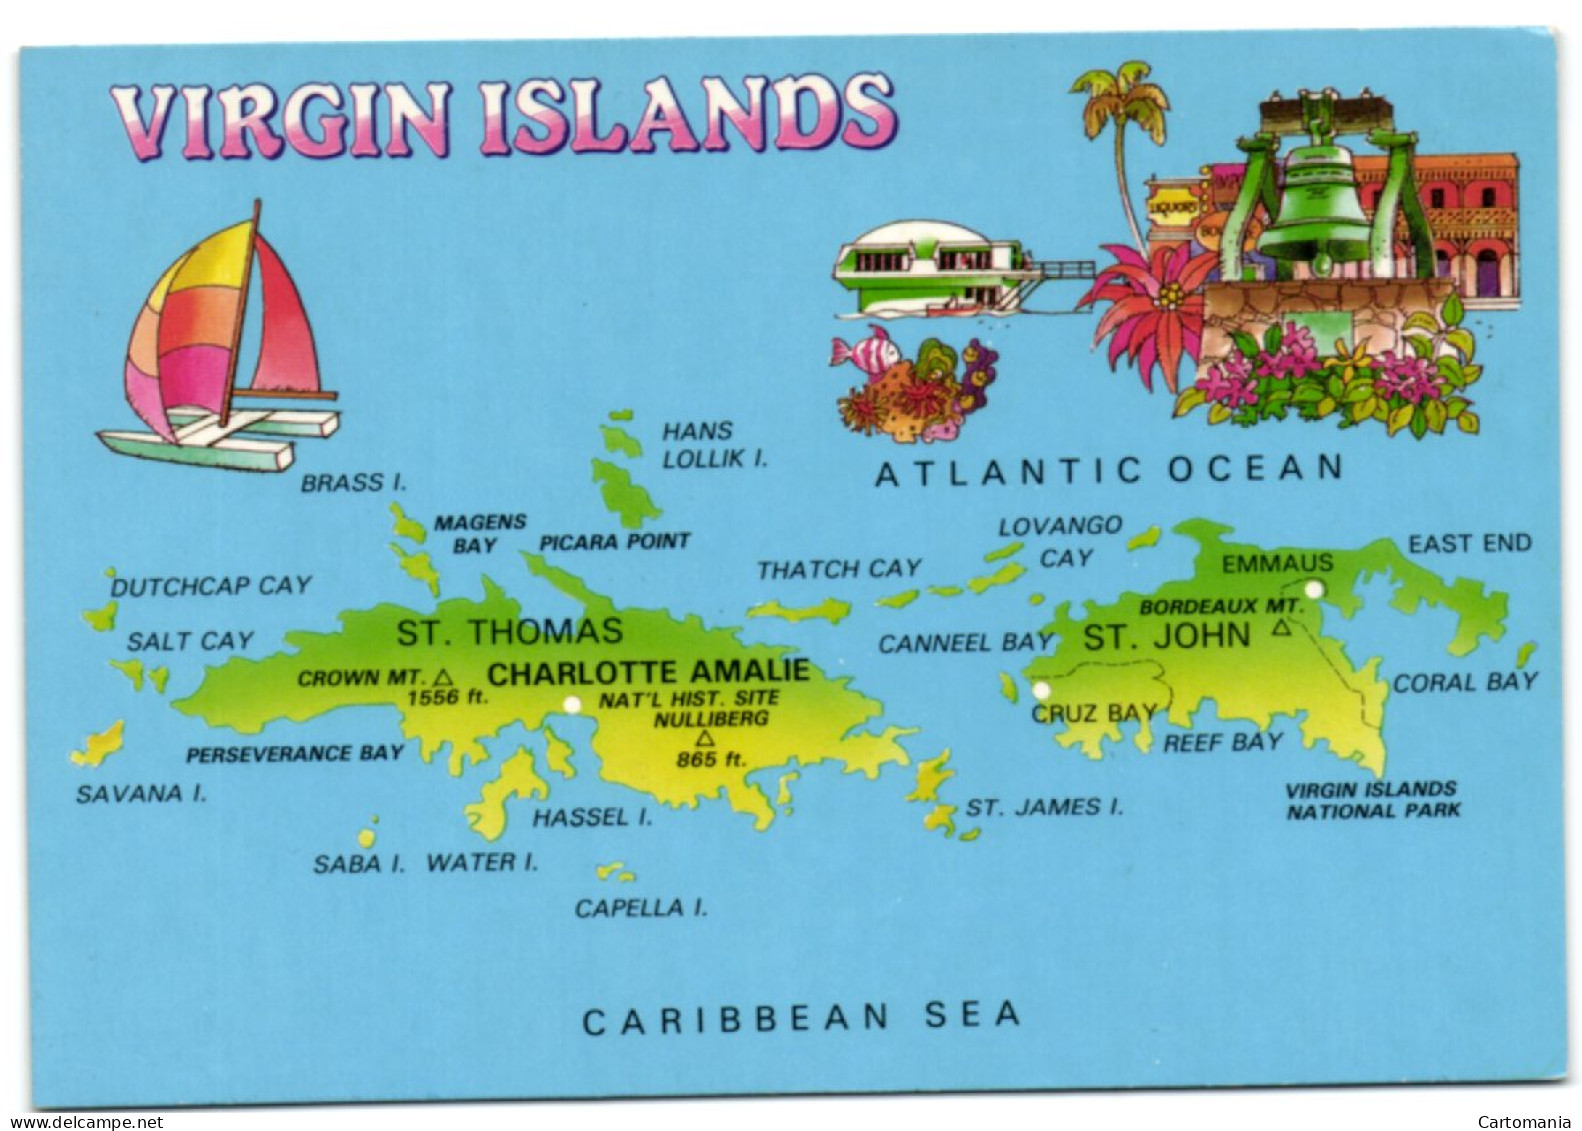 Virgin Islands - Virgin Islands, British